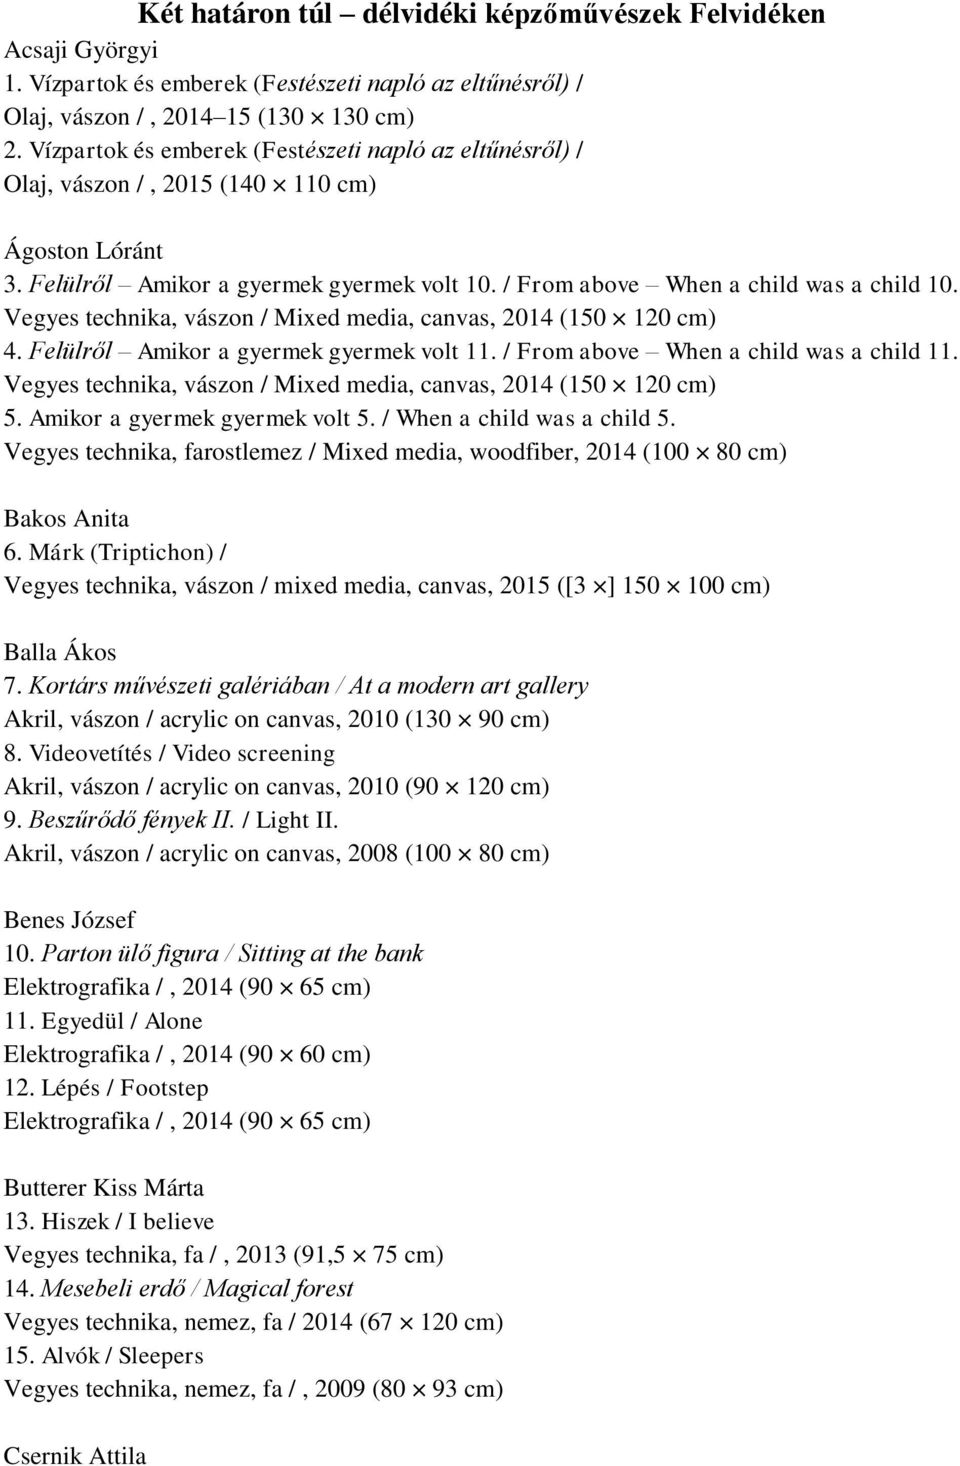 Vegyes technika, vászon / Mixed media, canvas, 2014 (150 120 cm) 4. Felülről Amikor a gyermek gyermek volt 11. / From above When a child was a child 11.